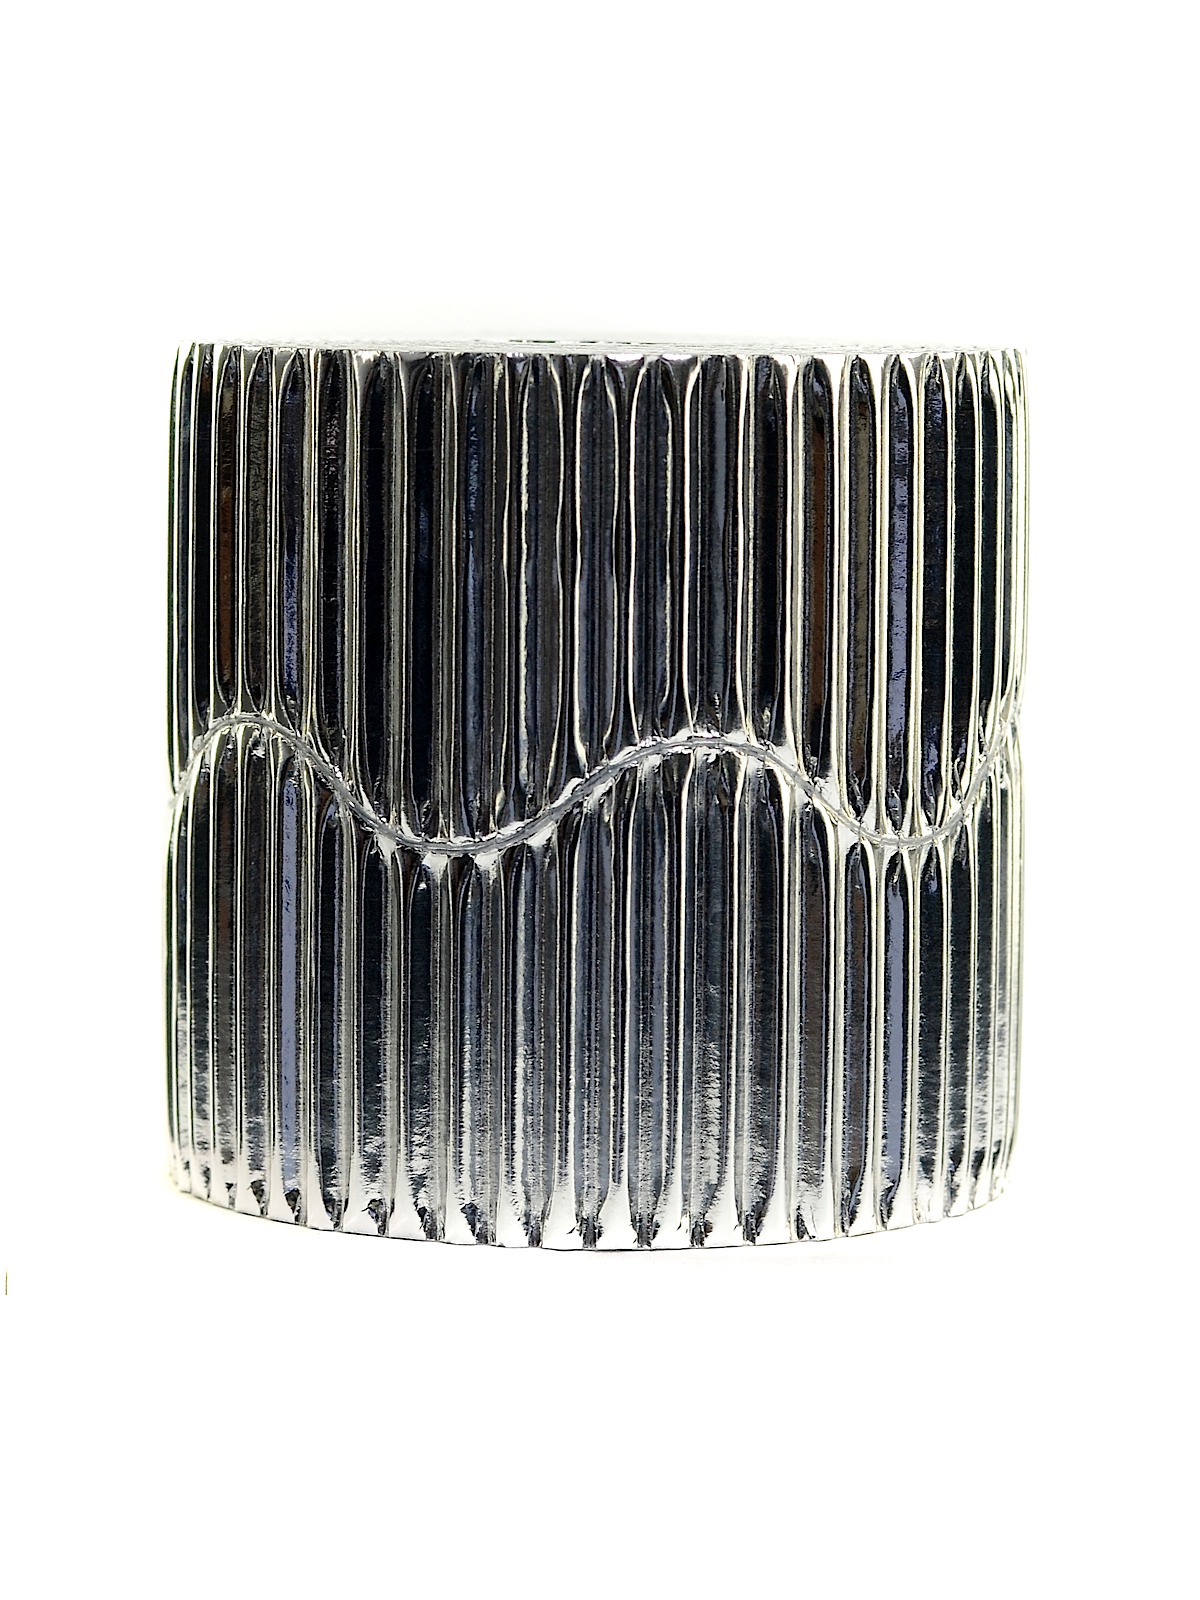 Bordette Corrugated Roll Metallic Silver